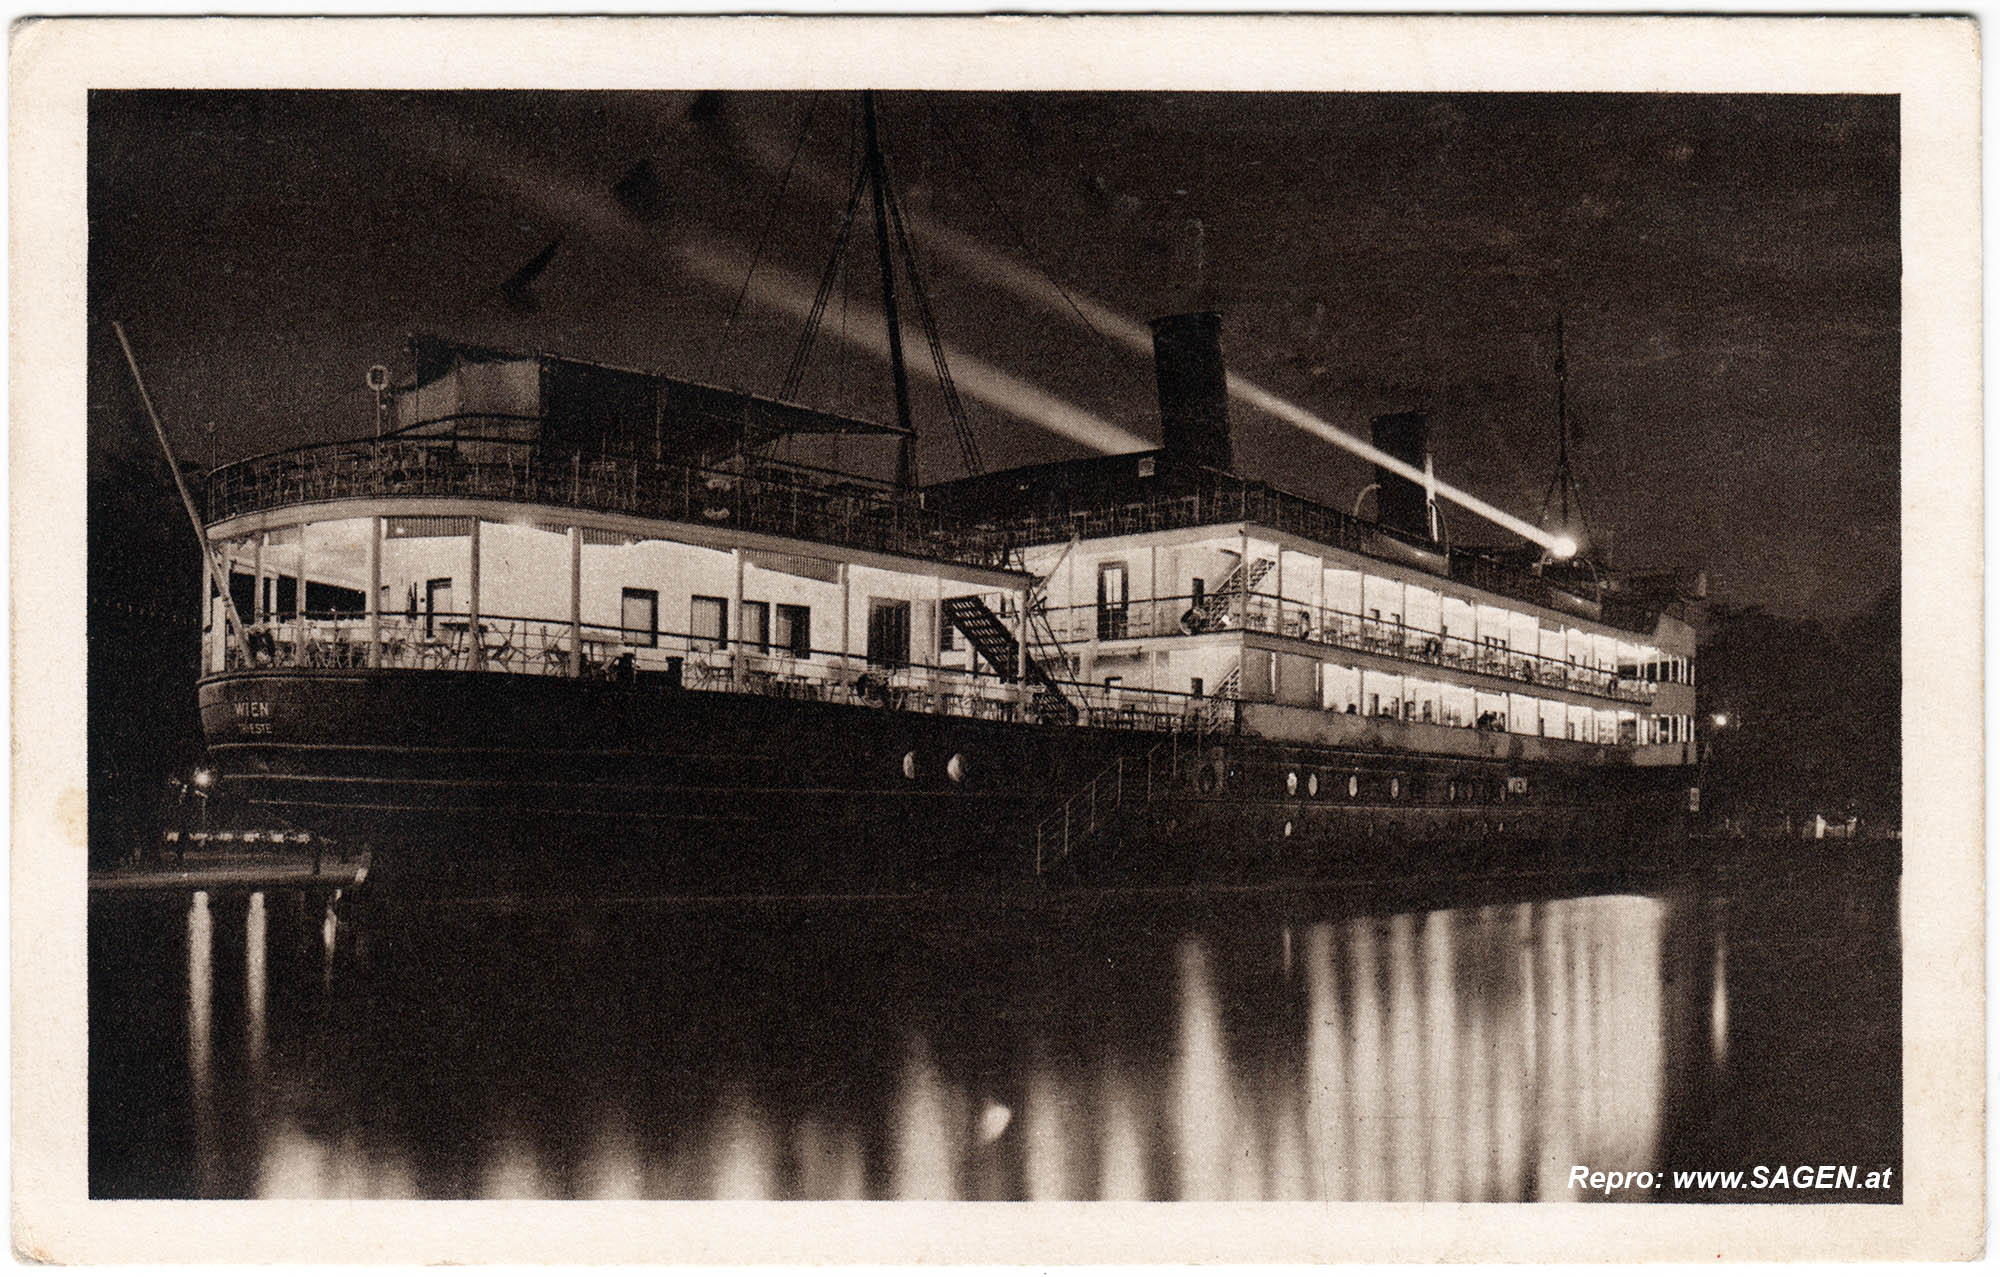 Lloyddampfer "Wien" bei Nacht, Prater 1913